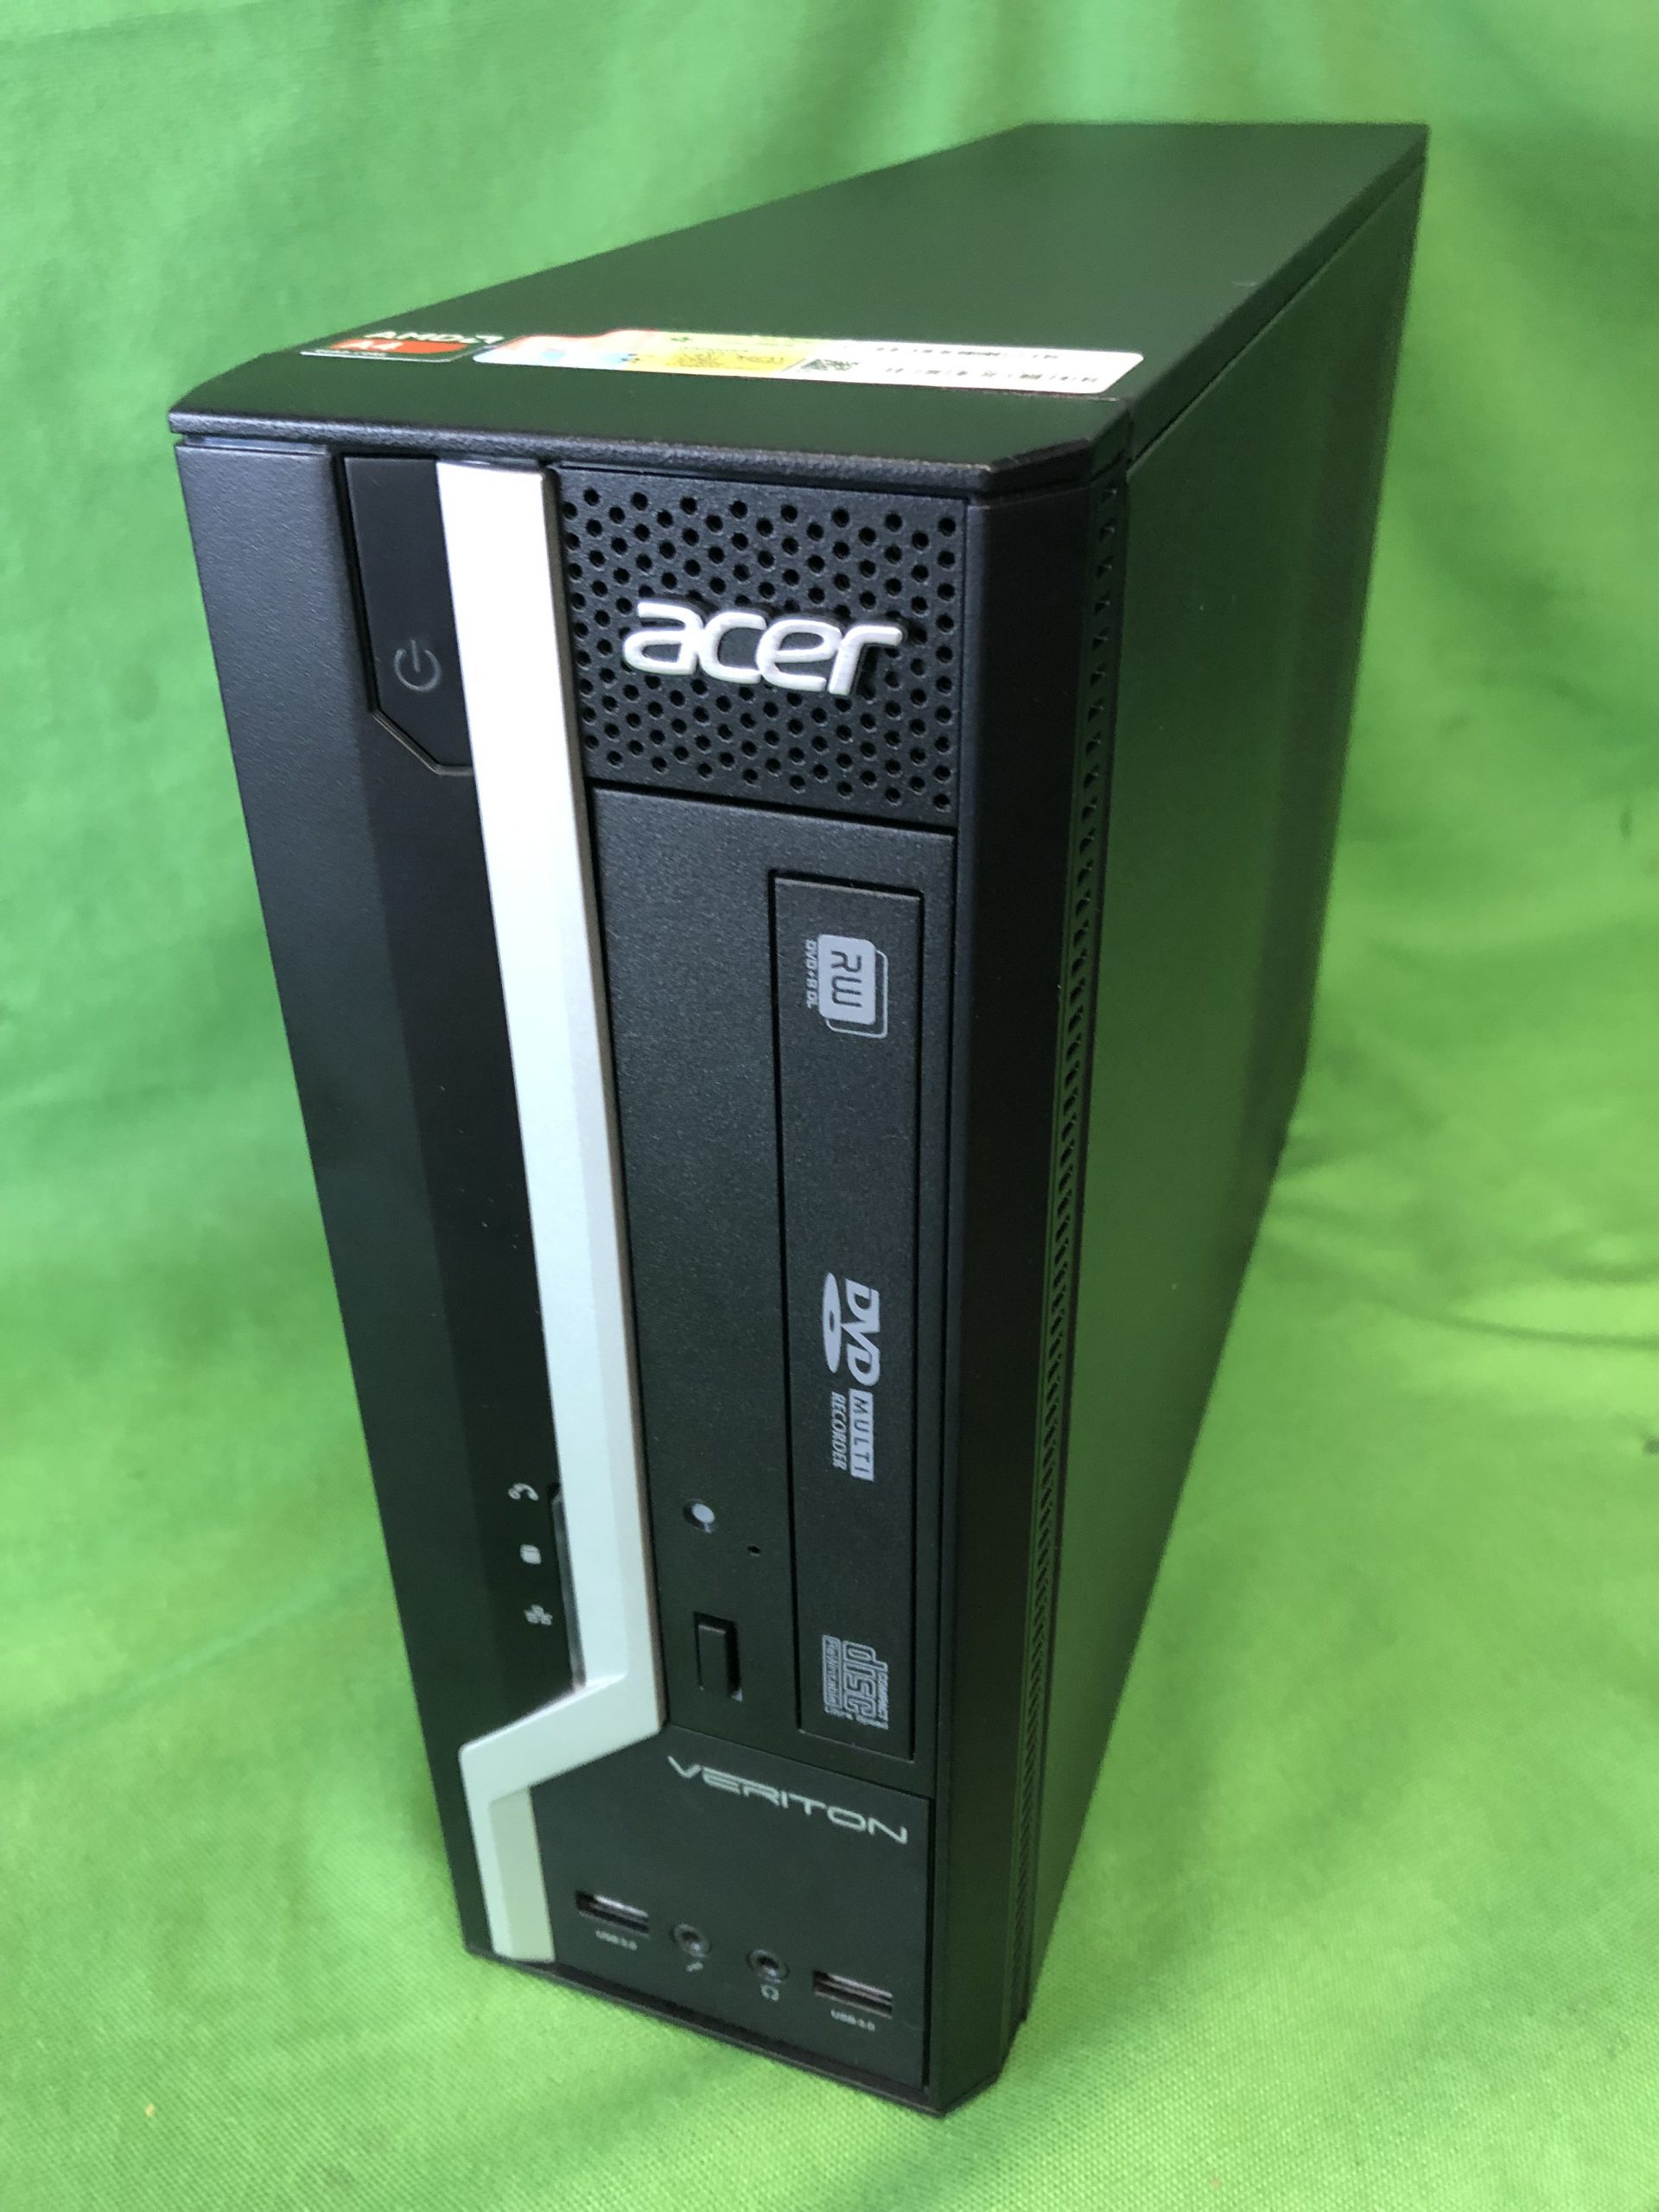 ACER AMD asztali számítógép, kiemelt kép